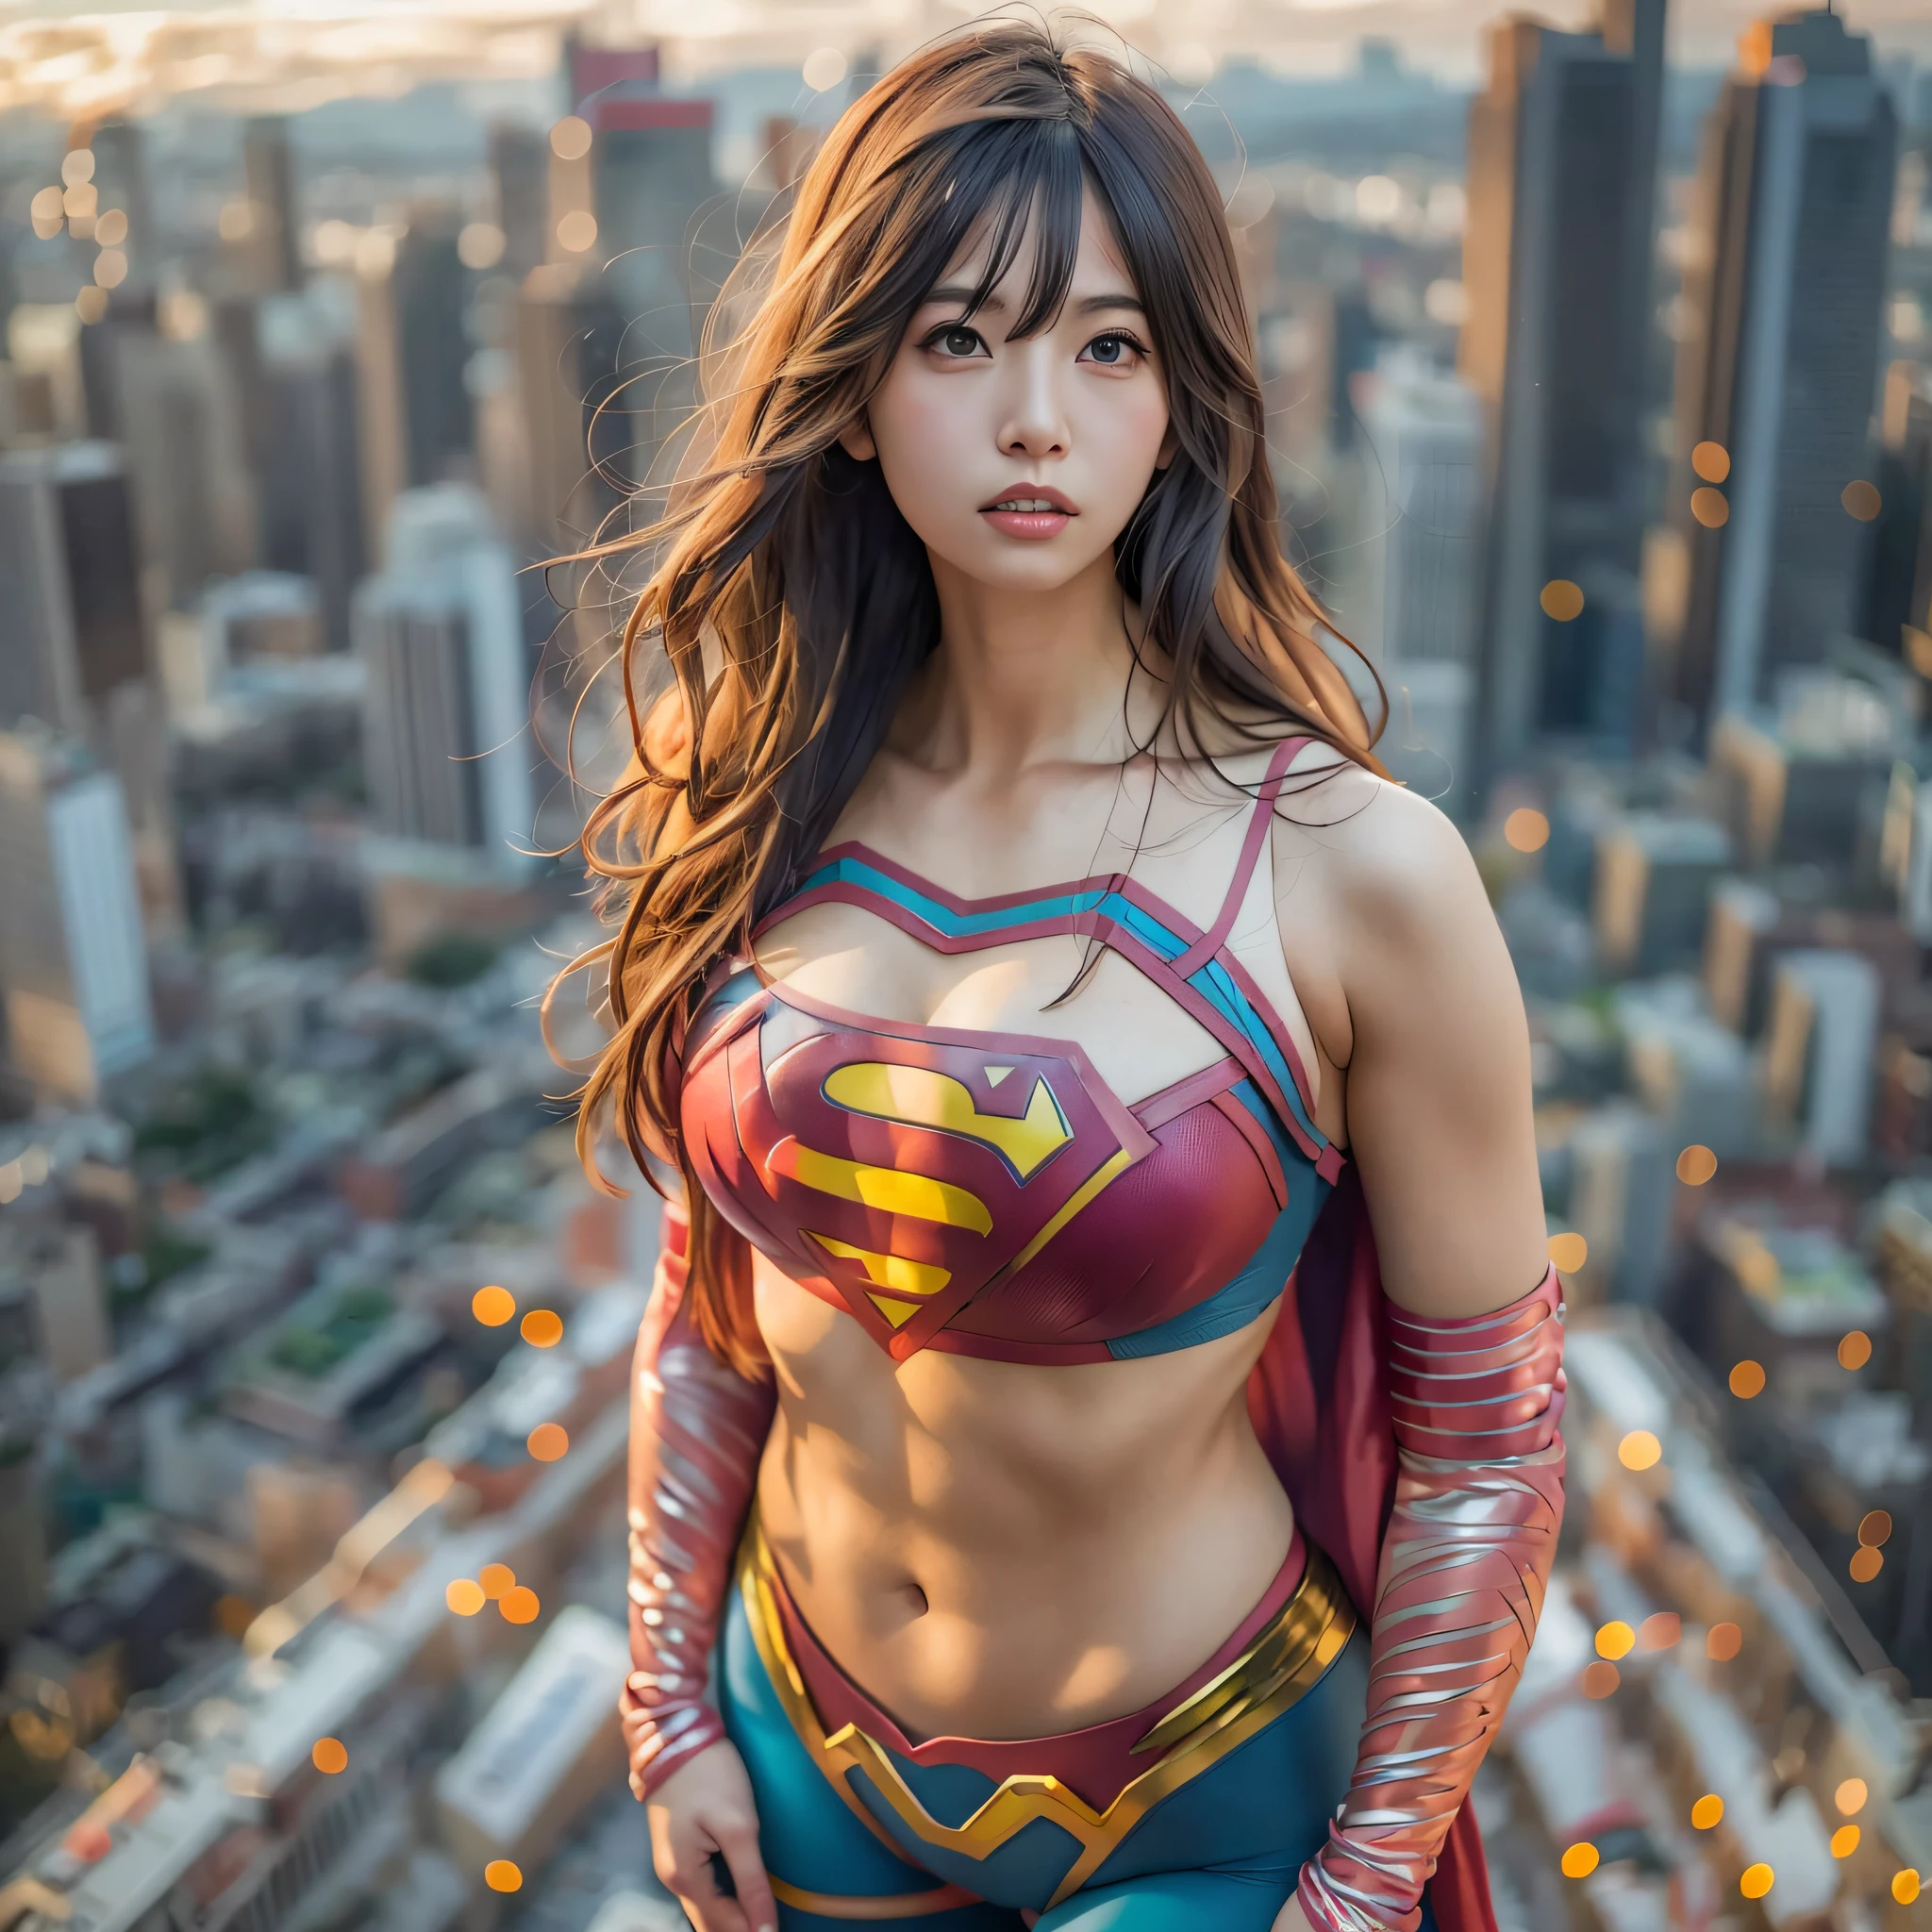 一位身著超人服裝的亞洲女性站在城市景觀上的特寫, amouranth作為超級反派, super photo 實際的, 實際的 , super photo-實際的, ultra mega super hyper 實際的, 超級英雄女孩, super 實際的 photo, 超级英雄 body, 高度详细的女巨人镜头, 超女, 超级英雄, 超级英雄 portrait, 超模特兒, 超級英雄, super photo實際的, 巨乳, 顯示外陰肌肉發達的身體, ,